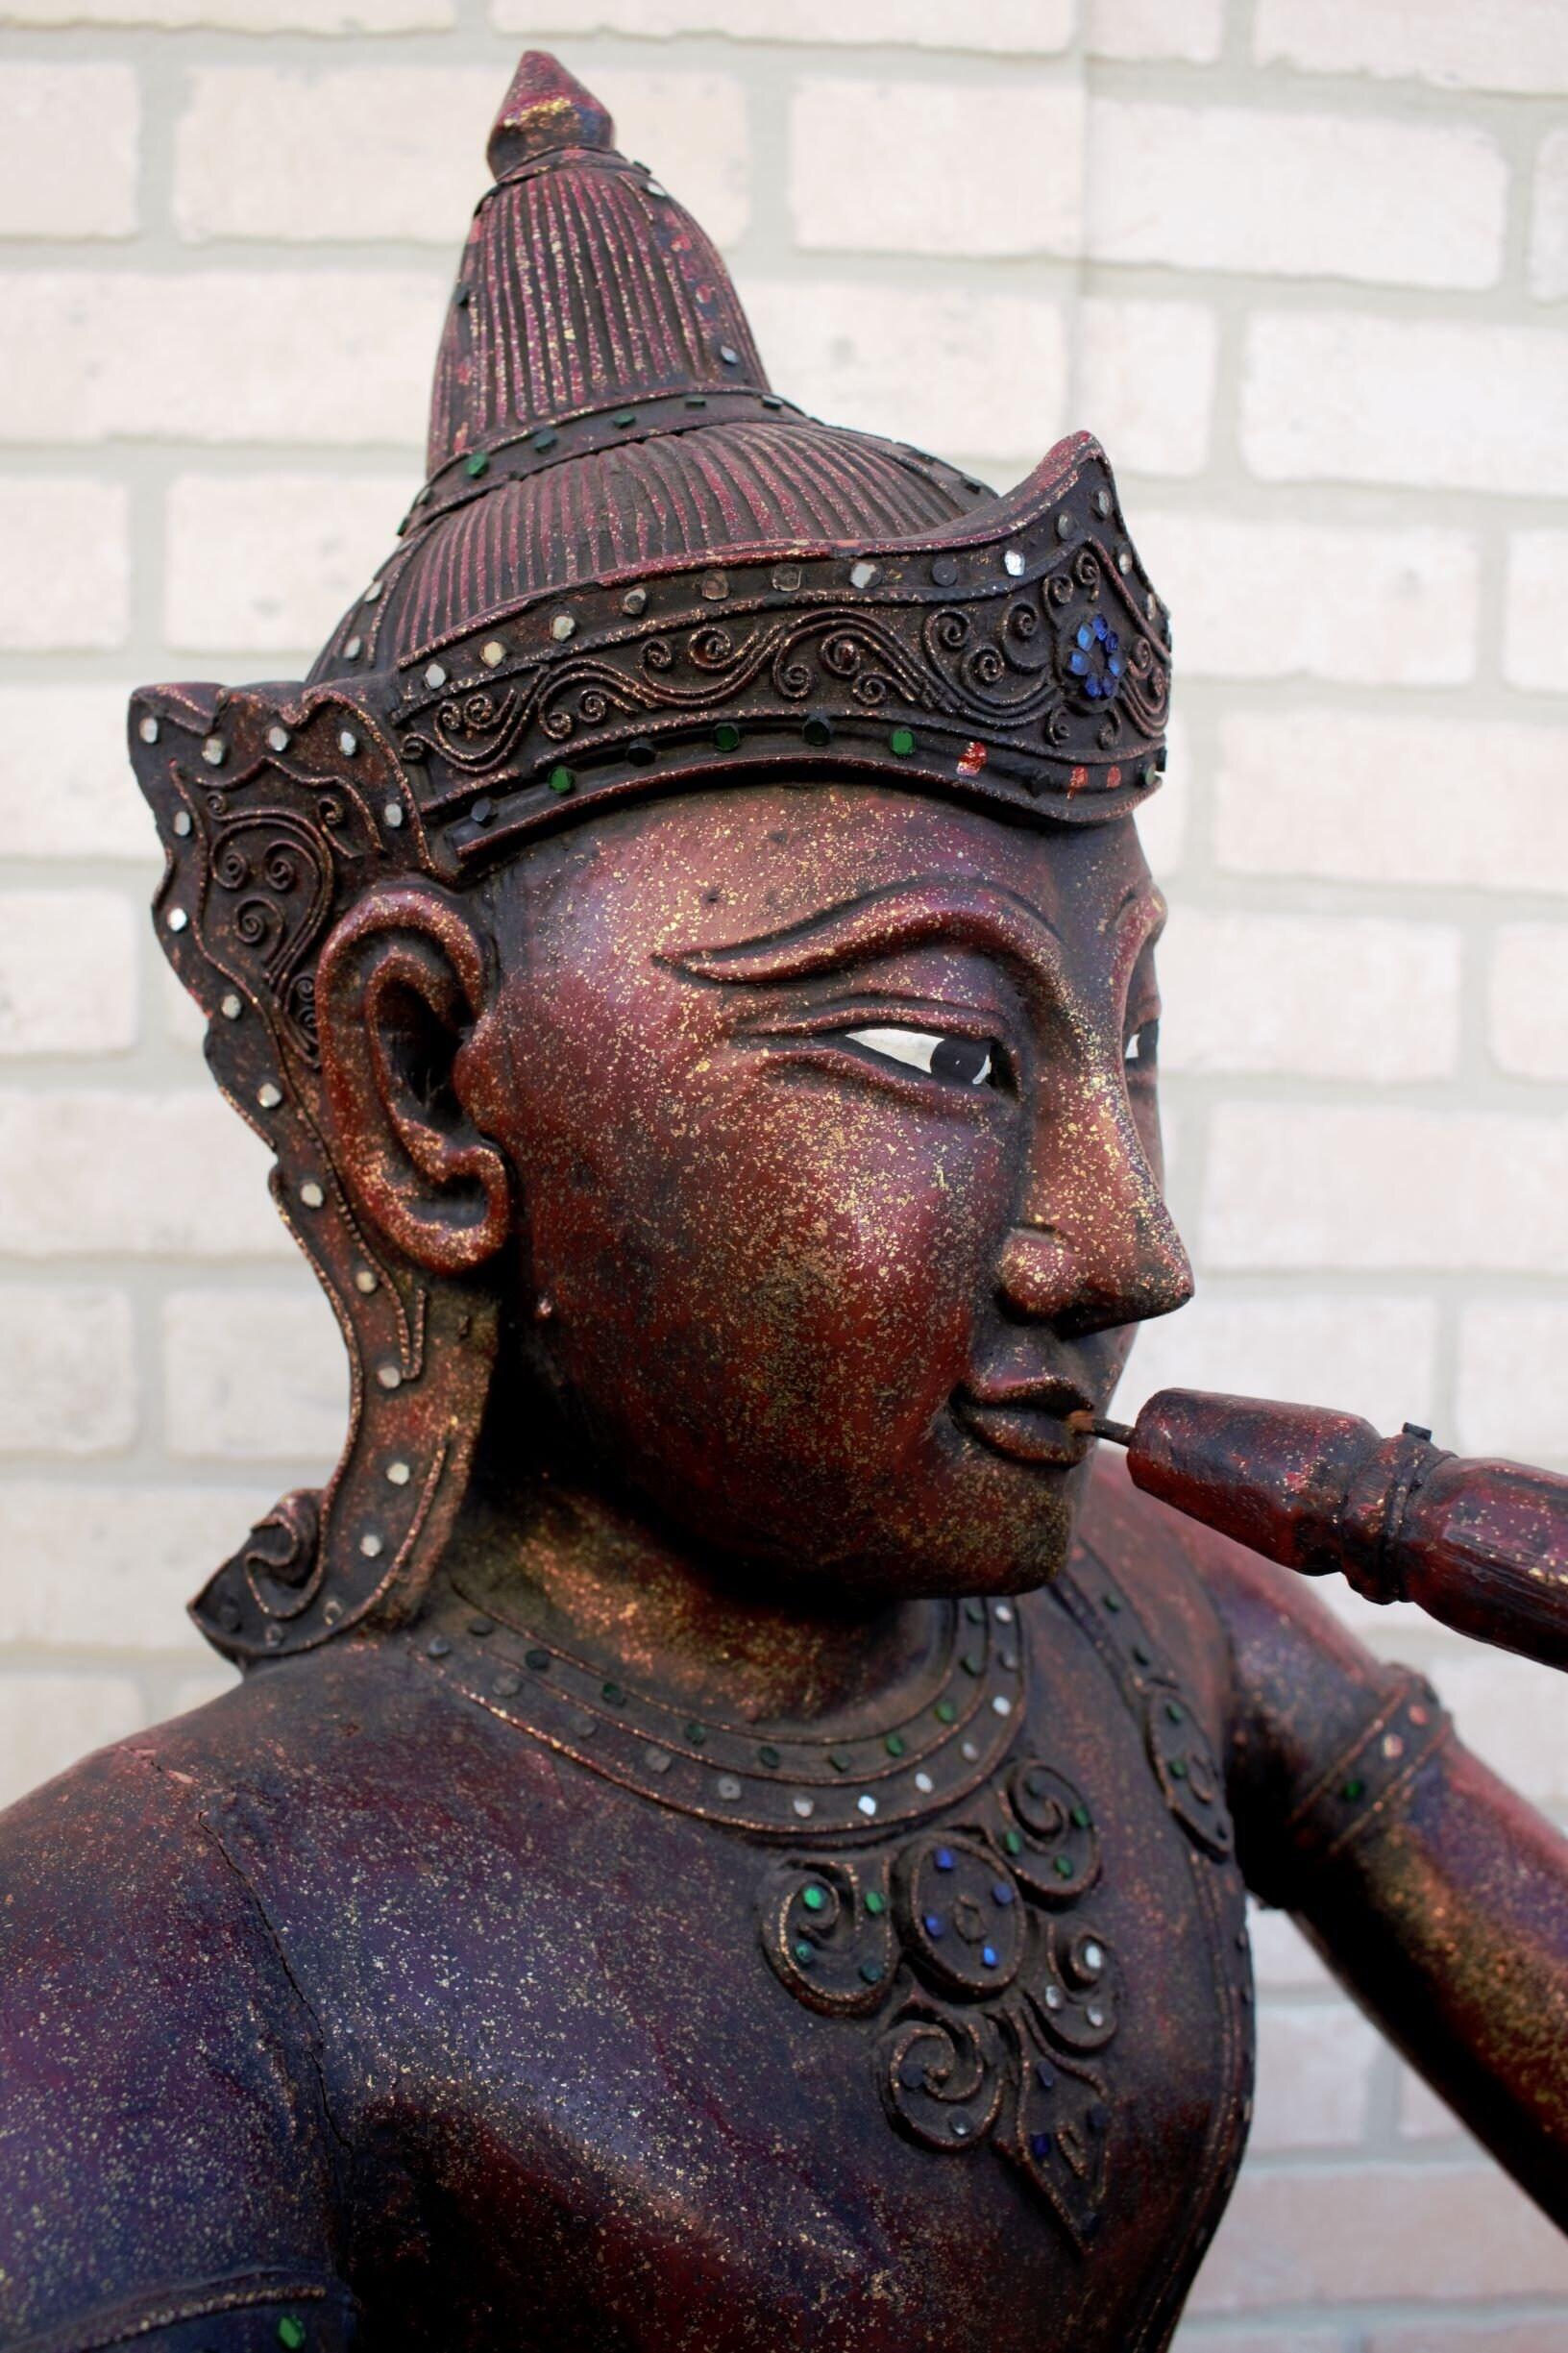 Antiker thailändischer geschnitzter sitzender Buddha, der eine Flöte spielt

Dies ist ein antiker thailändischer Buddha mit einem dreieckigen Sockel, der zu seiner sitzenden Lotosstellung passt. Er hält eine Flöte und ist mit vielen Spiegeln und